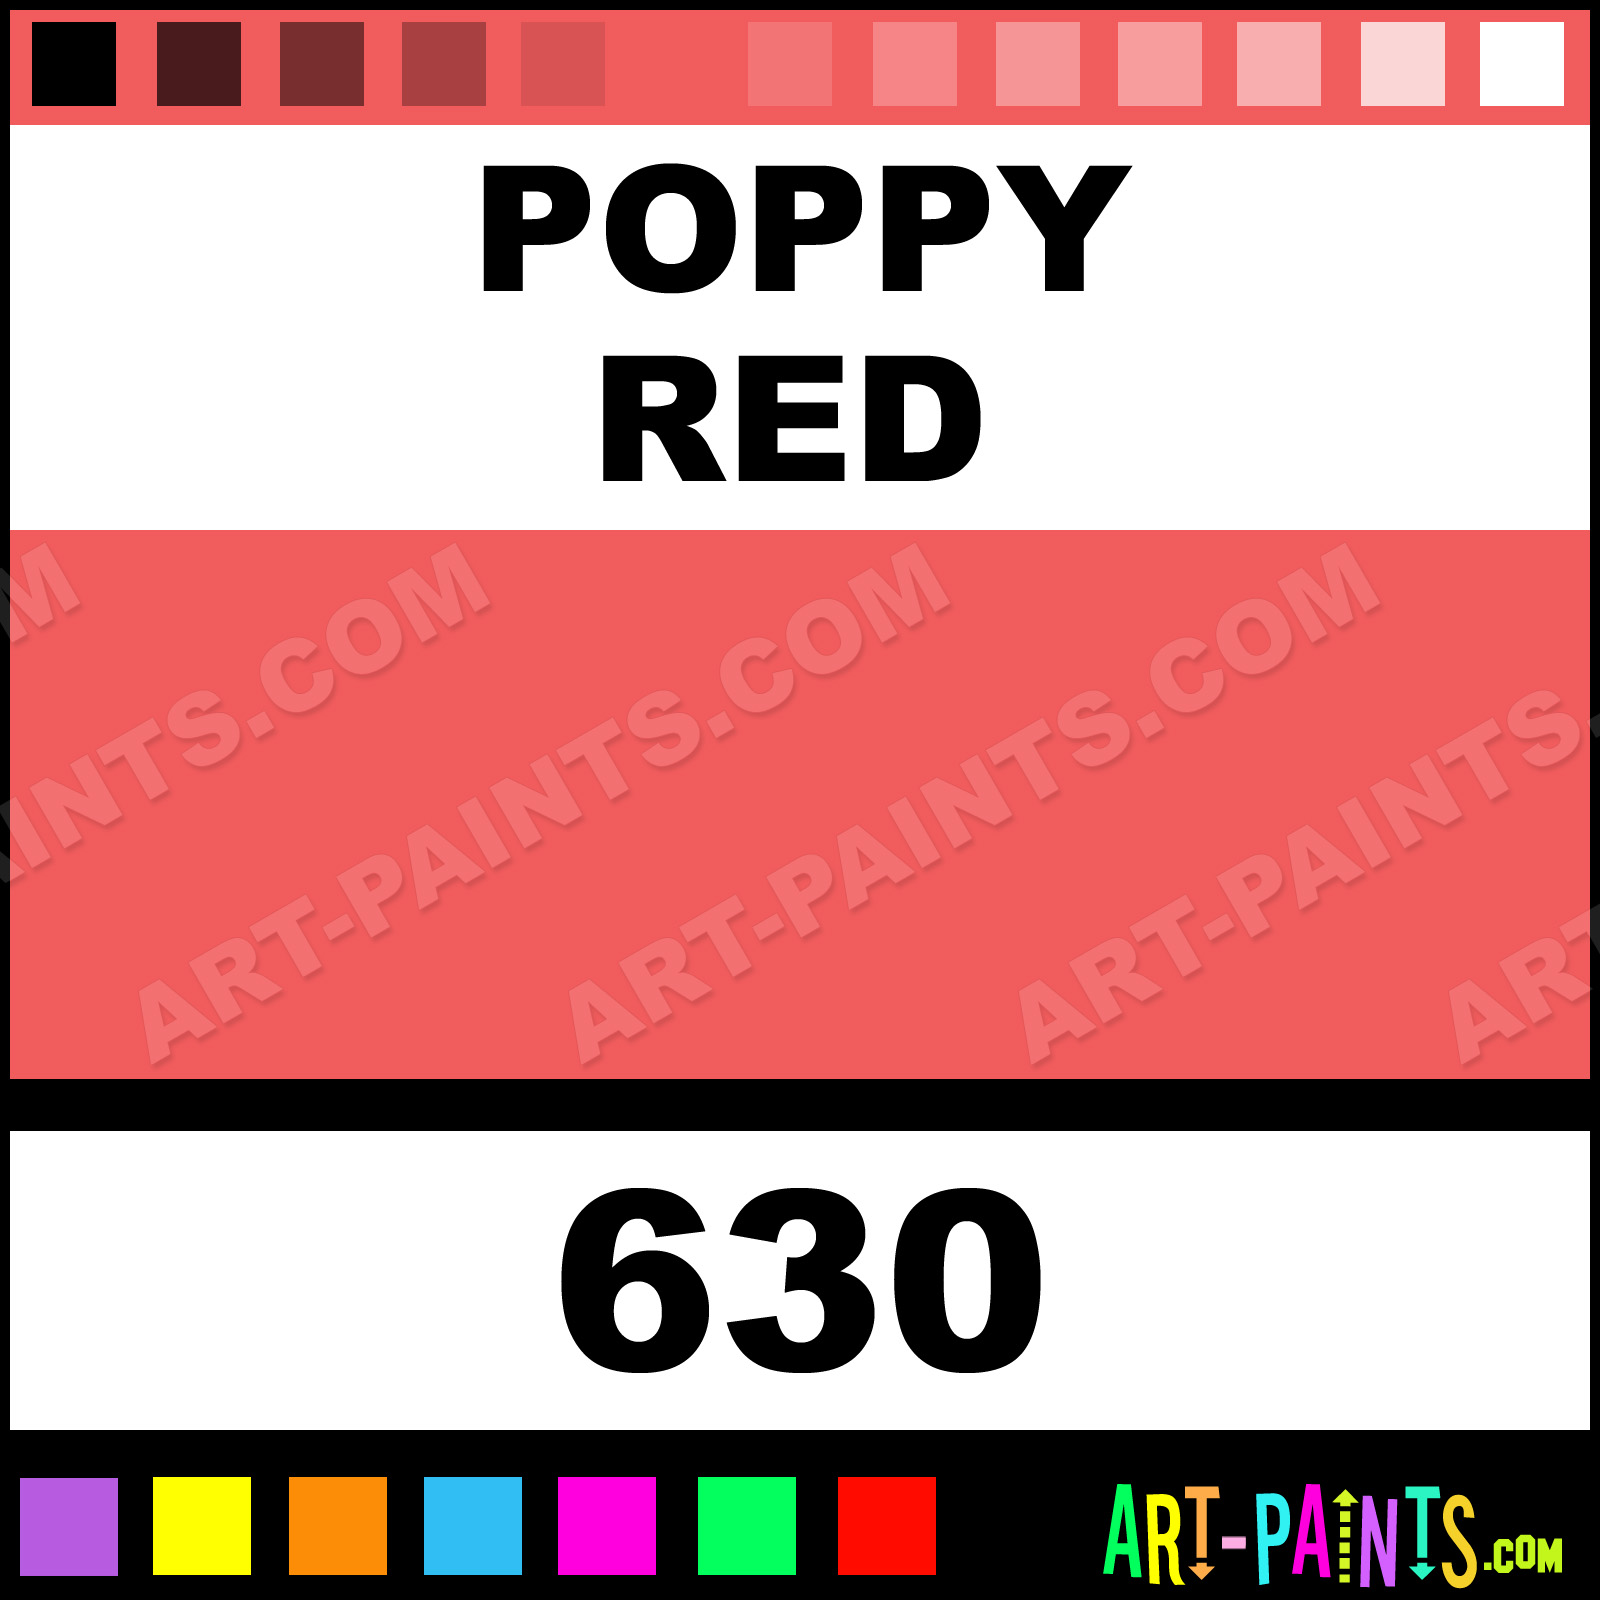 Poppy Red Folk Art Acrylic Paints - 630 - Poppy Red Paint, Poppy